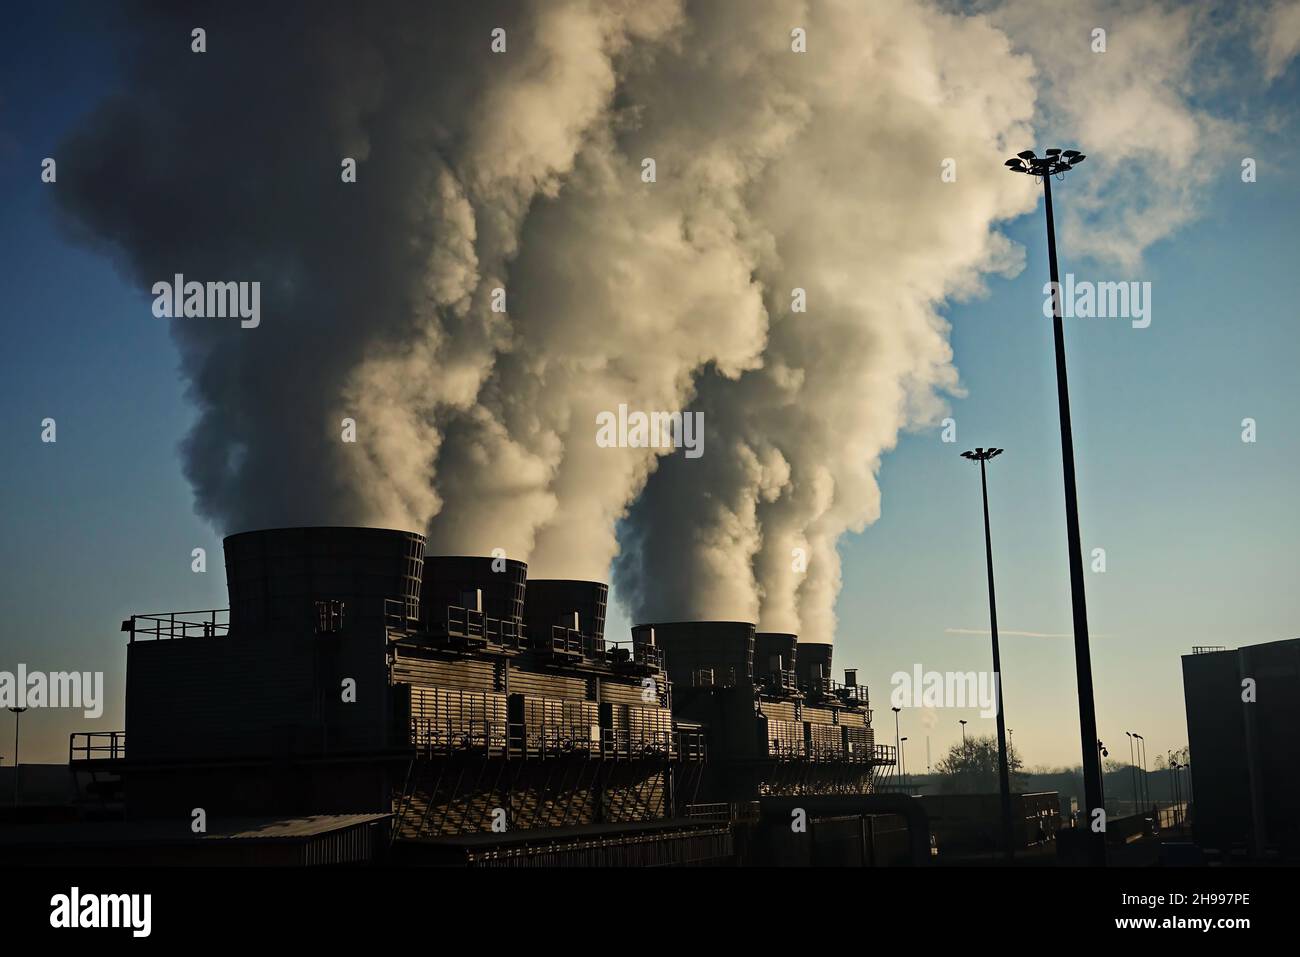 Chimeneas de fábrica con emisión de humo. Contaminación industrial de fábrica, gases de escape de chimeneas. Chimenea de fábrica Foto de stock